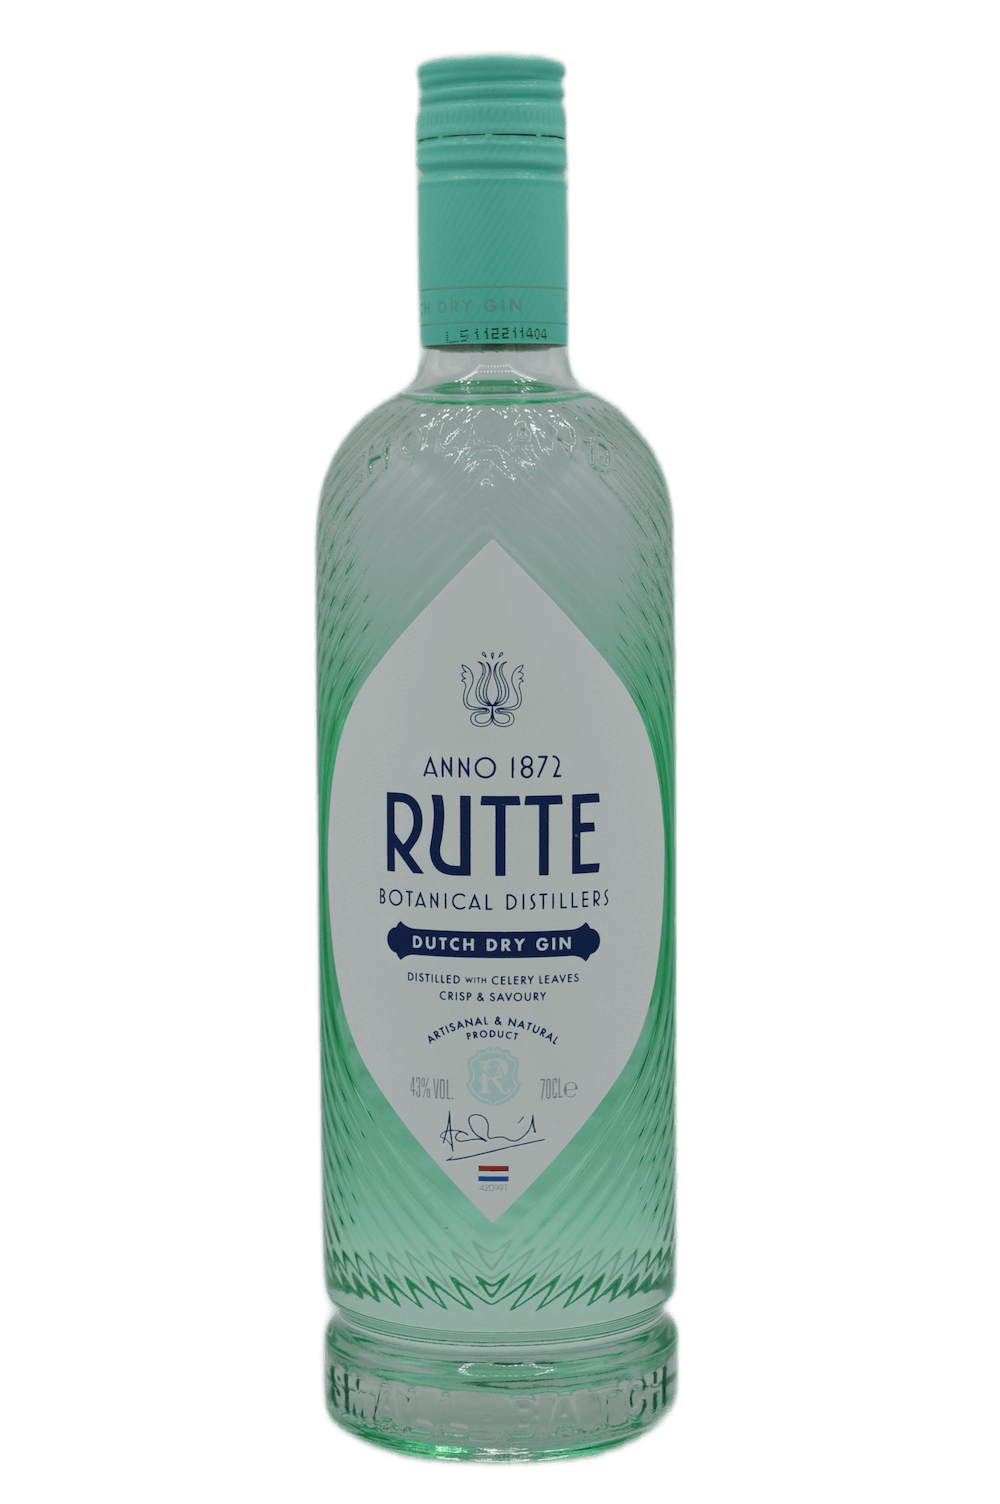 Rutte Celery Dutch Dry Gin